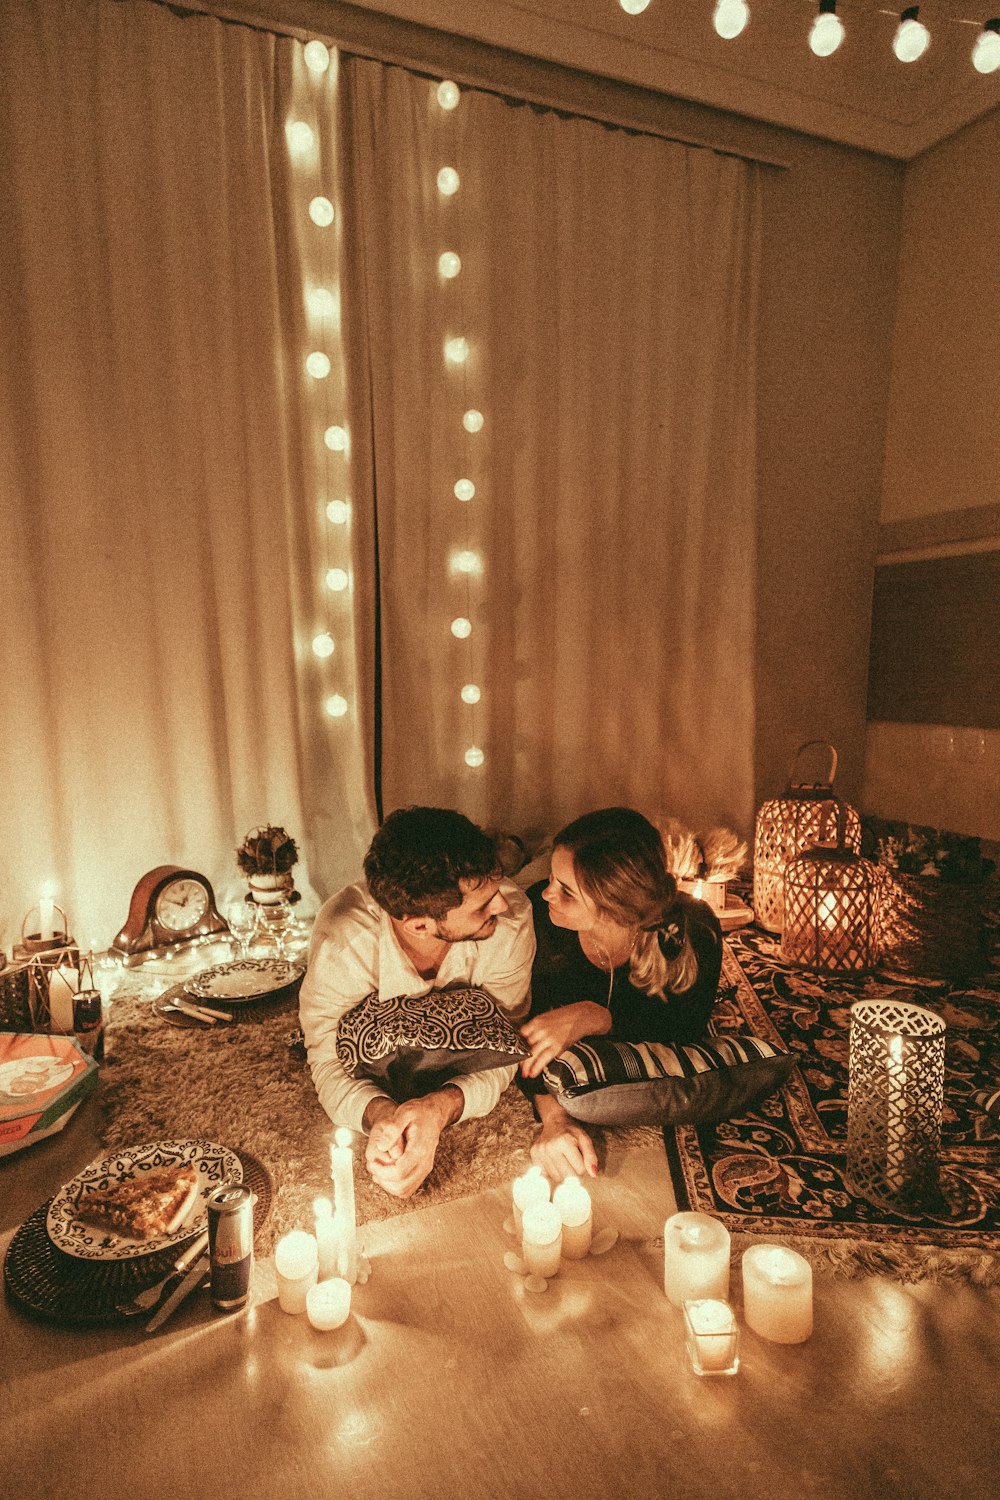 촛불이 켜진 카펫에 누워 있는 커플